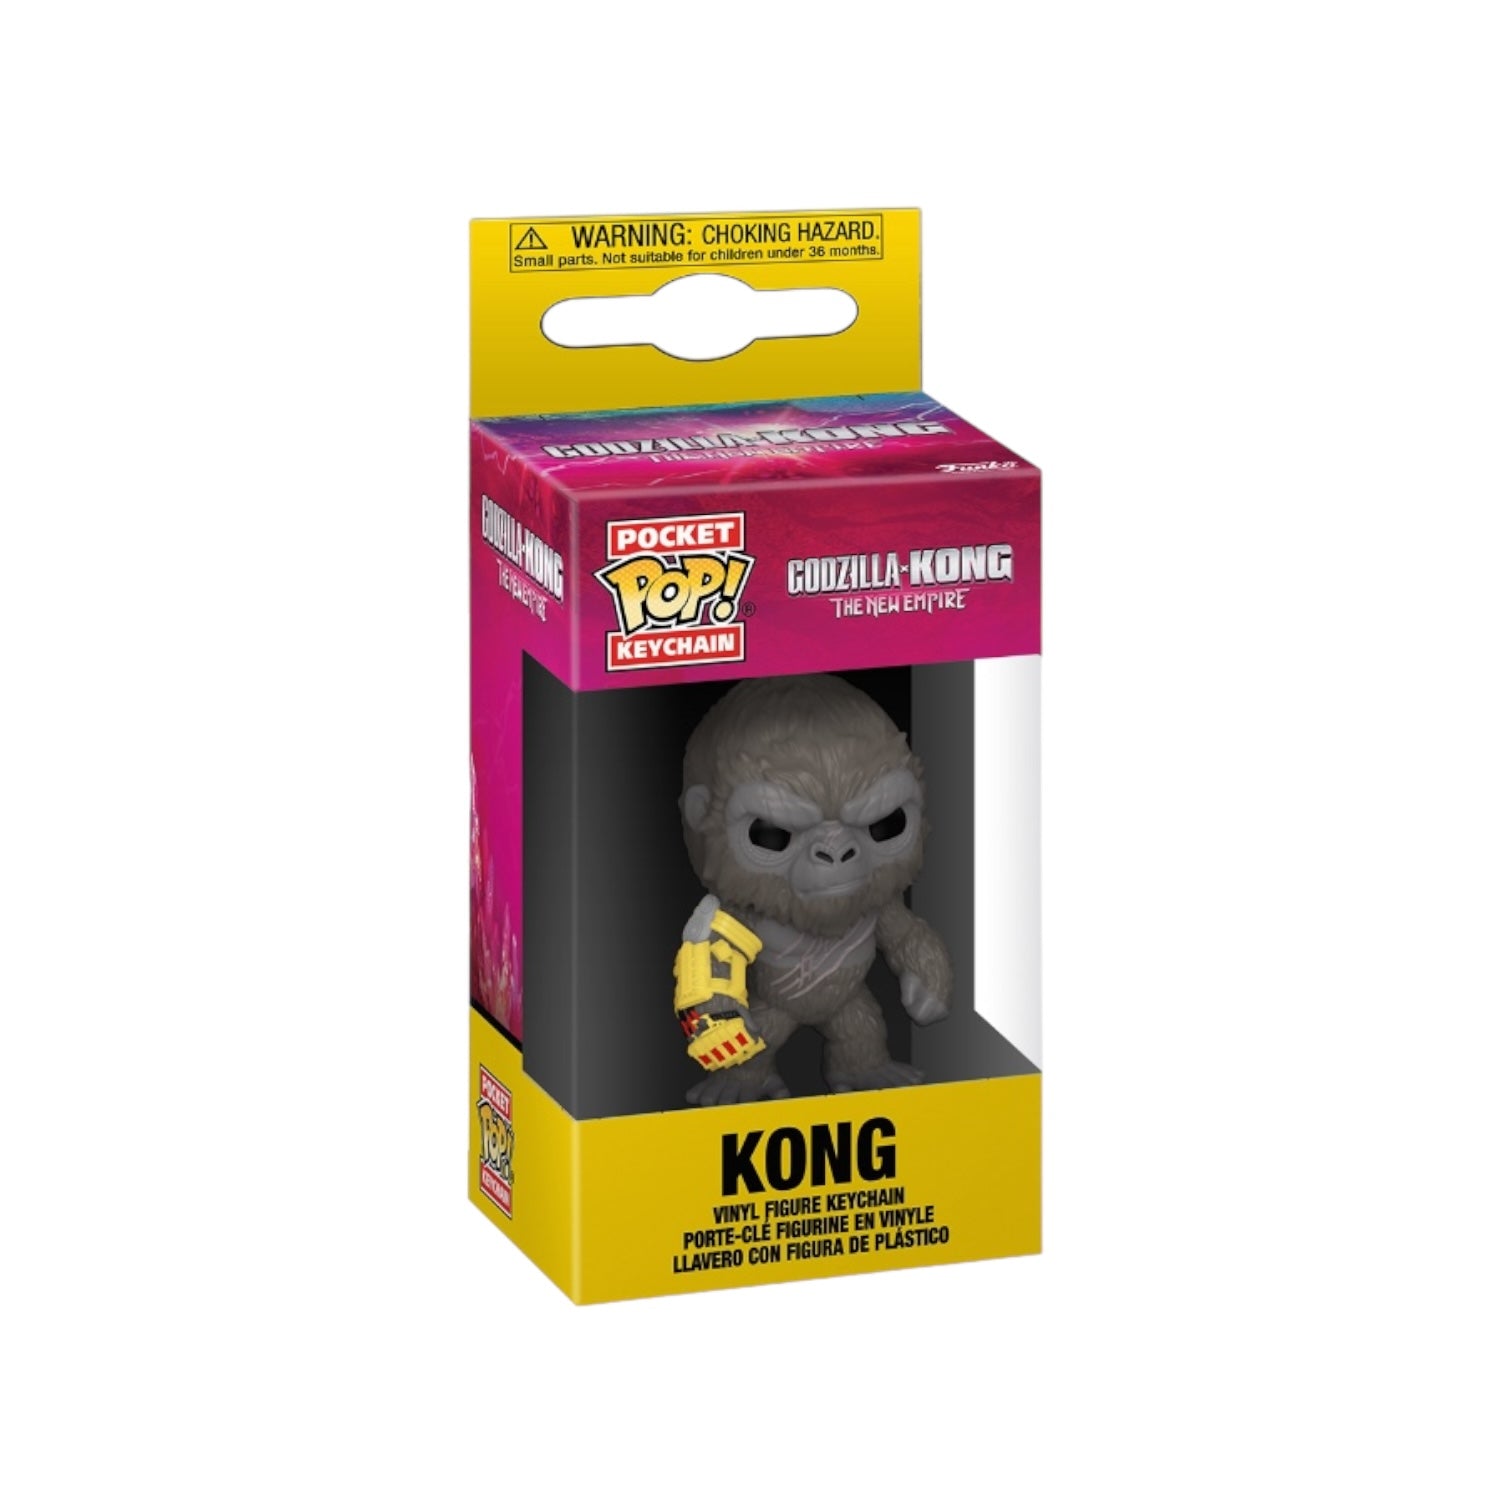 Kong Funko Pocket Pop Keychain - Godzilla *Kong - The New Empire